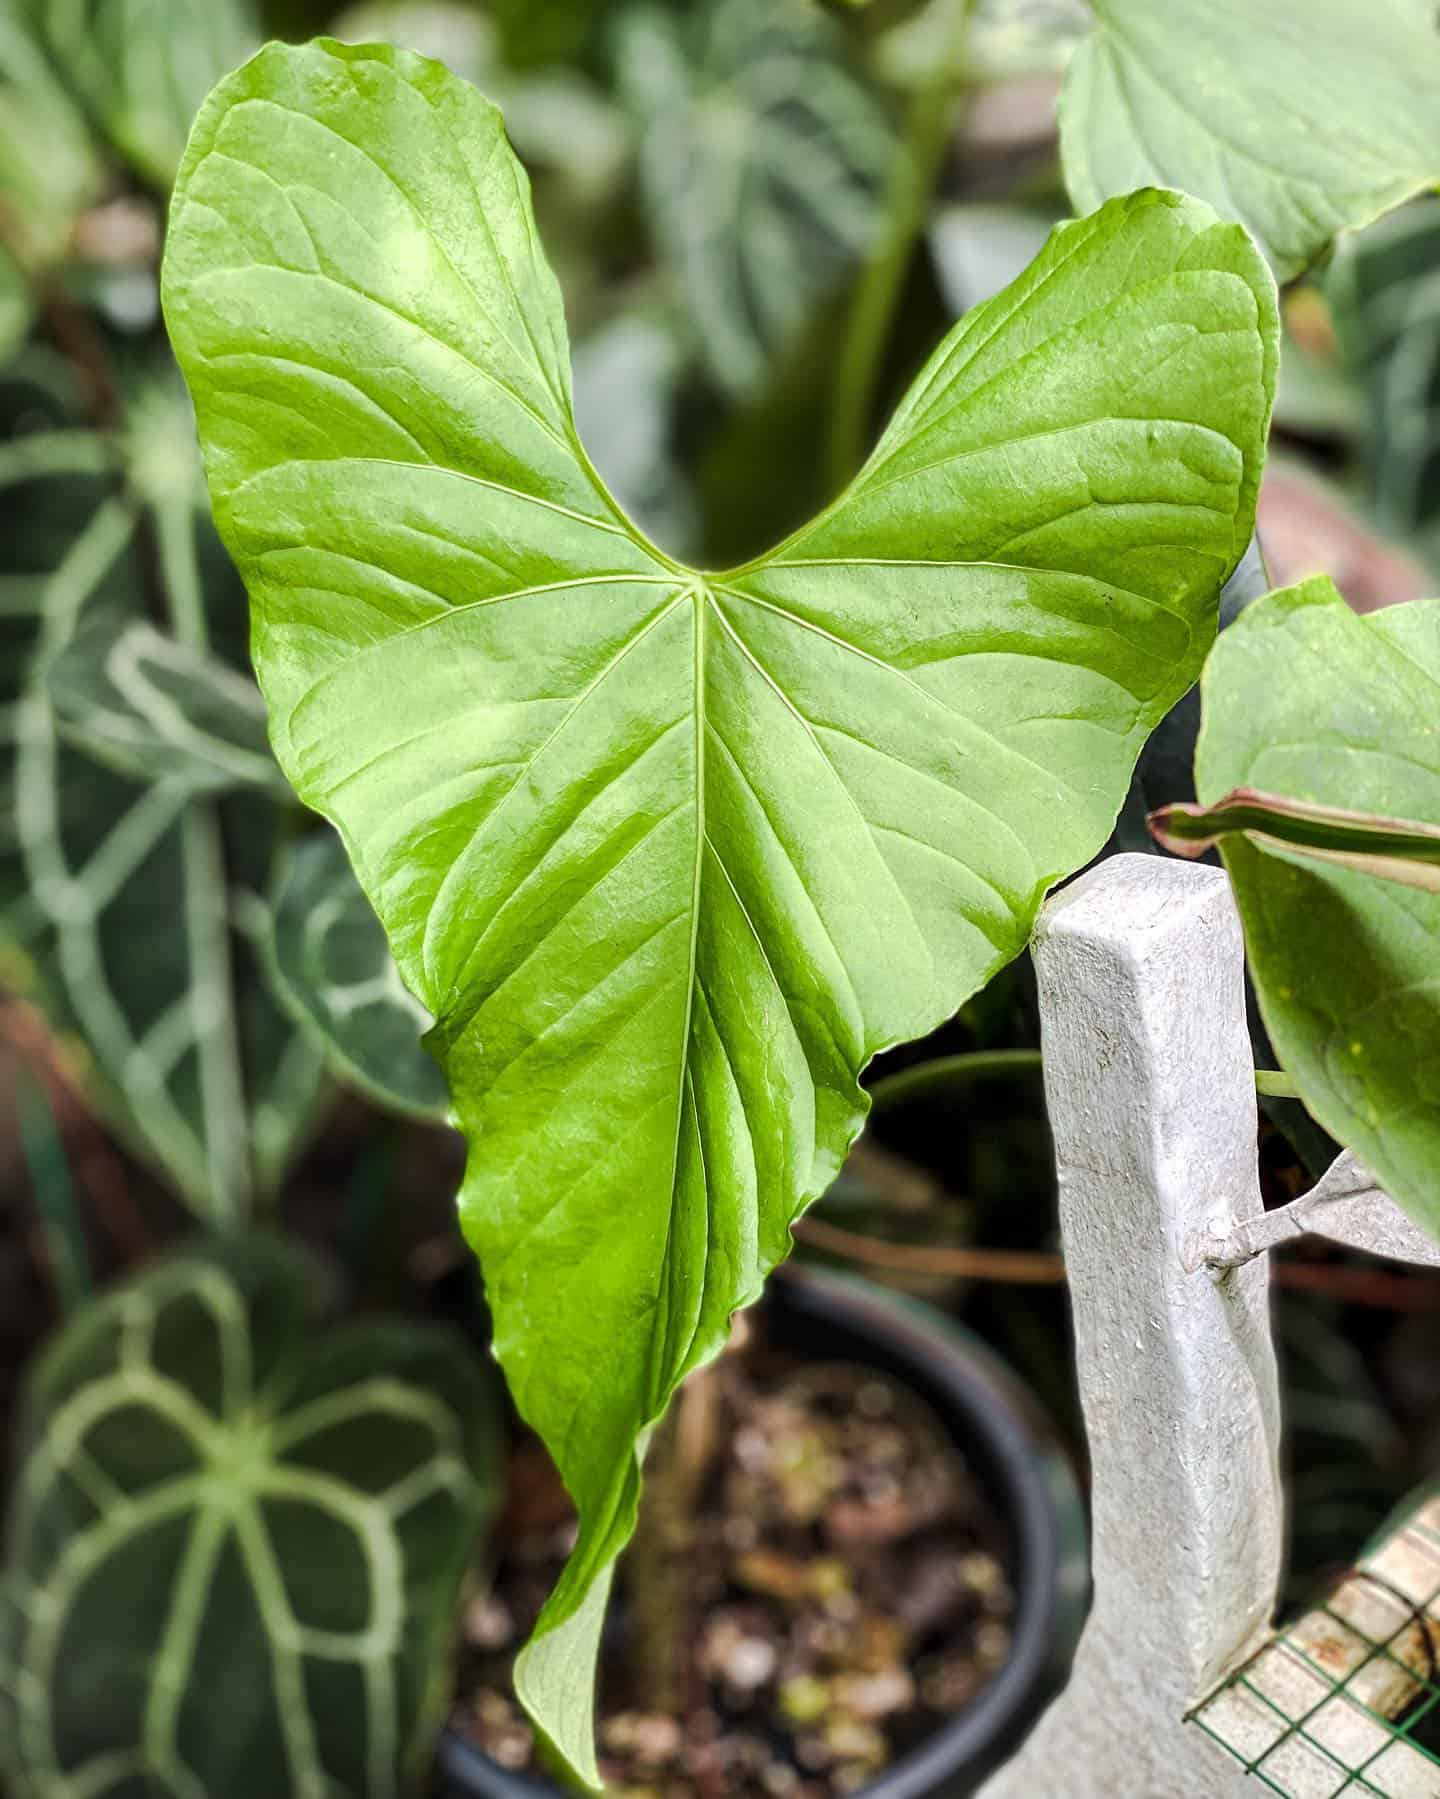 heartshaped leaf of Anthurium Balaoanum plant